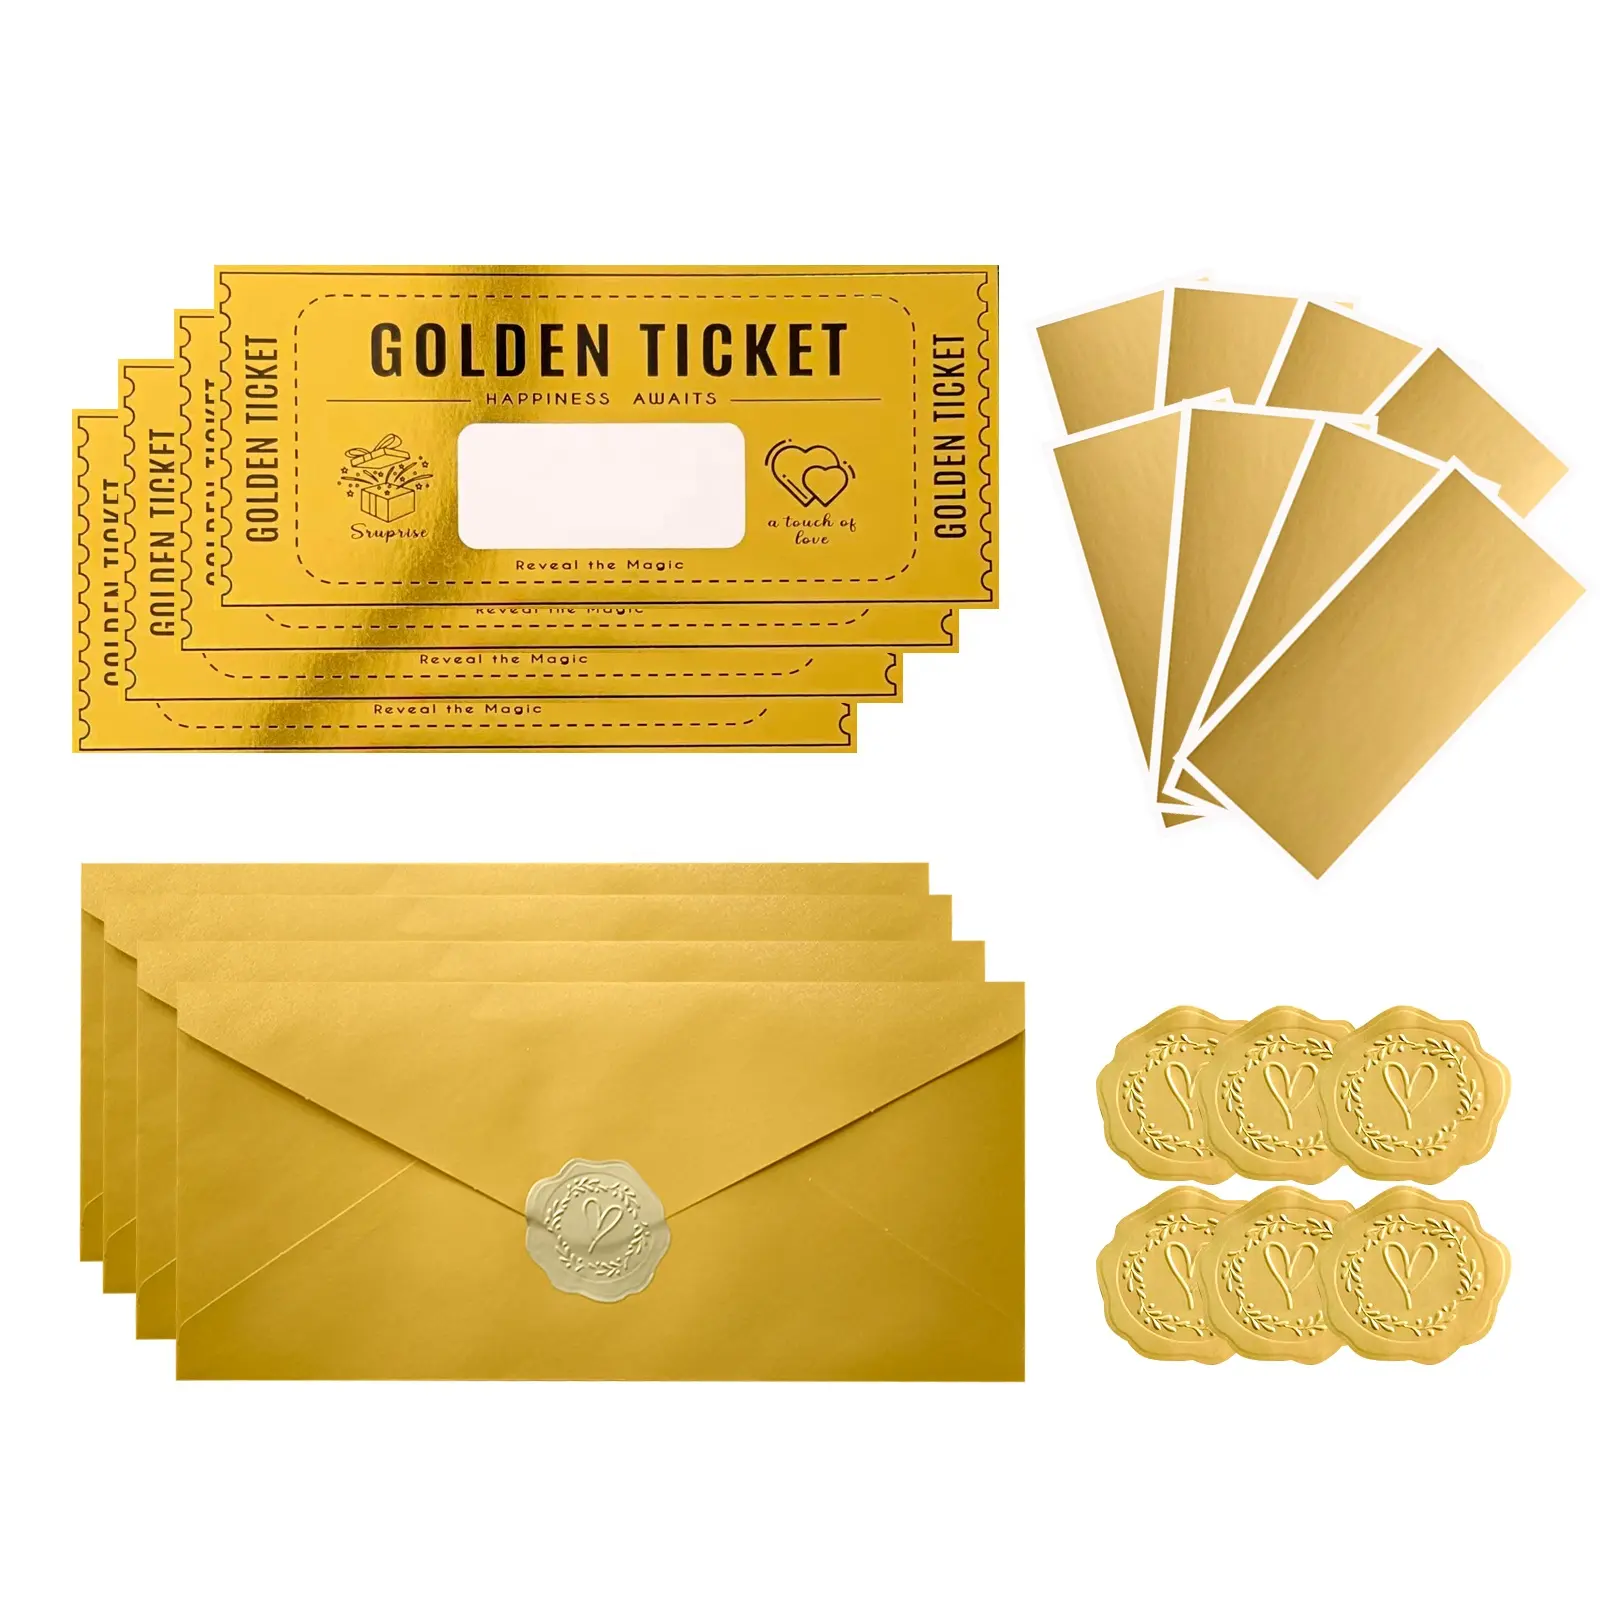 Aangepaste Gouden Envelopset Verrassingsgeschenk Onthult Gouden Ticket Promotionele Activiteit Voor Loterij Van Voedselbioscoopteaus